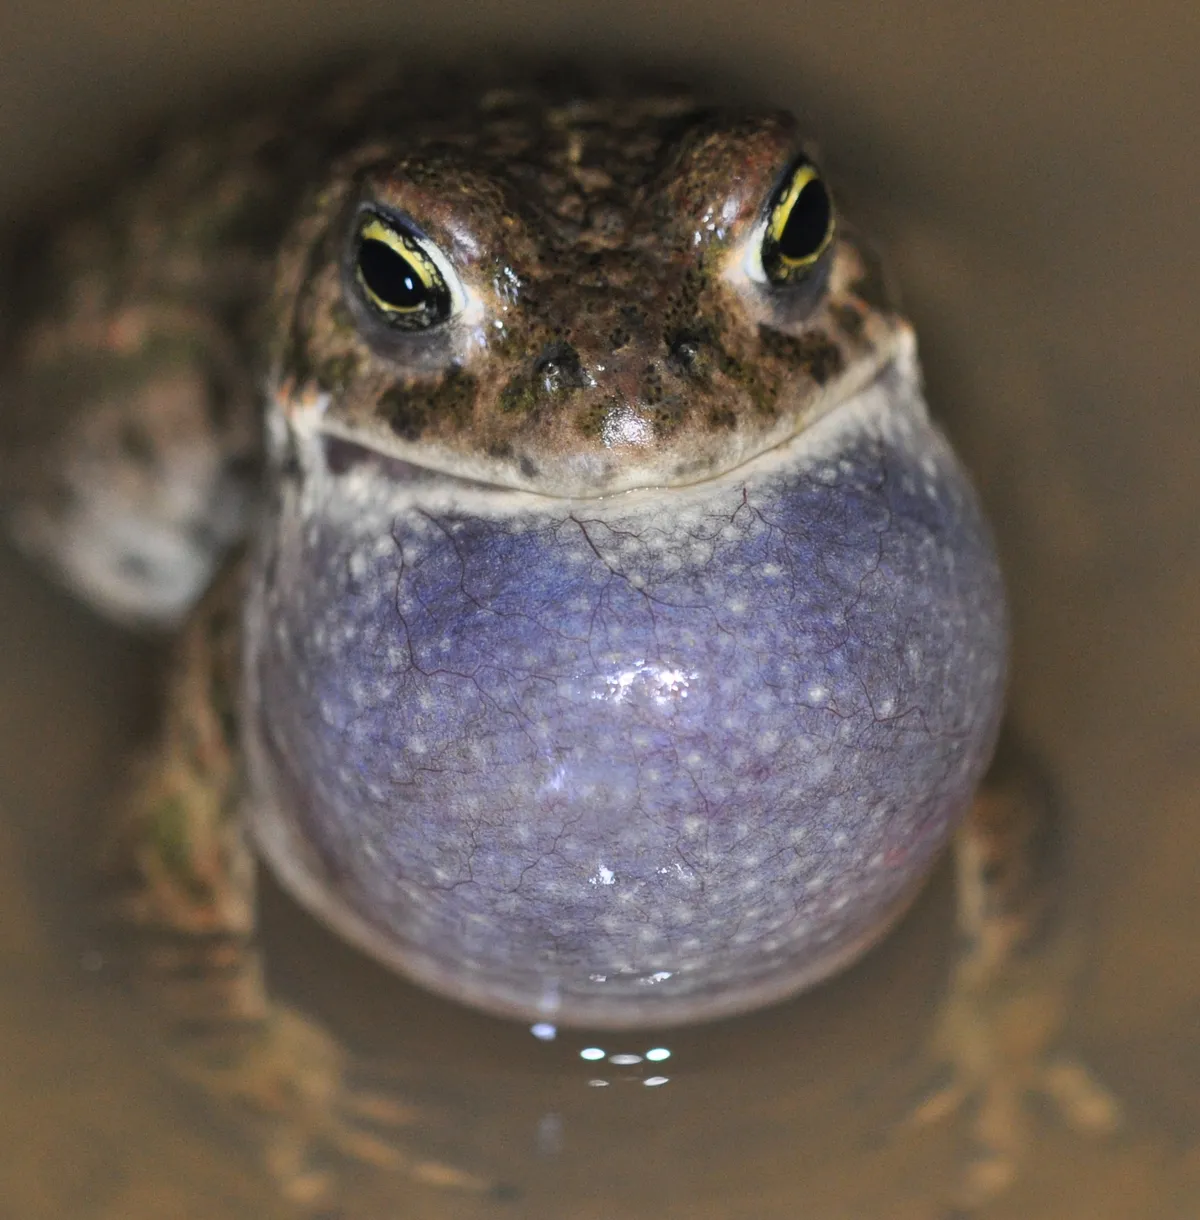 Natterjack toad calling. © Chris Dresh